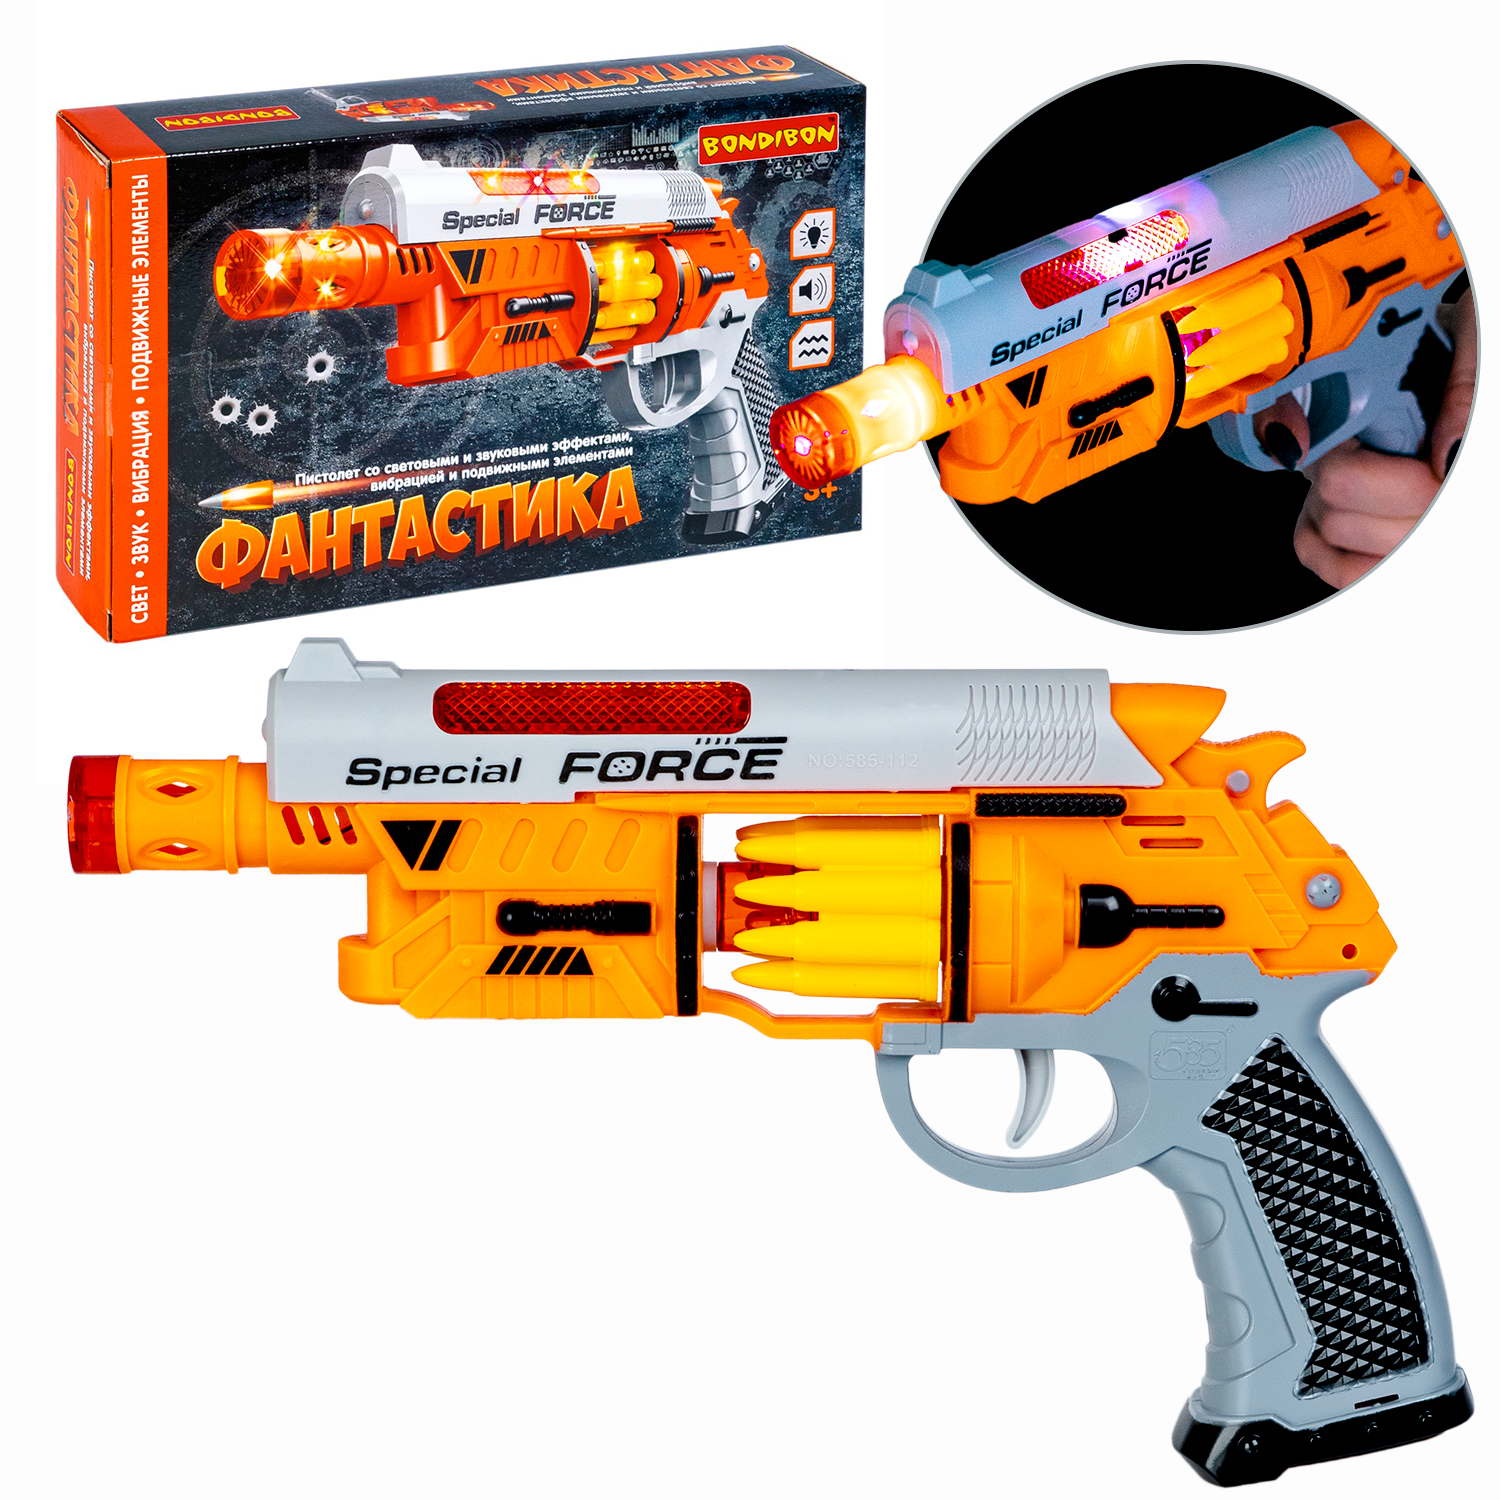 Пистолет BONDIBON Фантастика со свето-звуковым эффектом и подвижными элементами серебристо-оранжевого цвета - фото 1